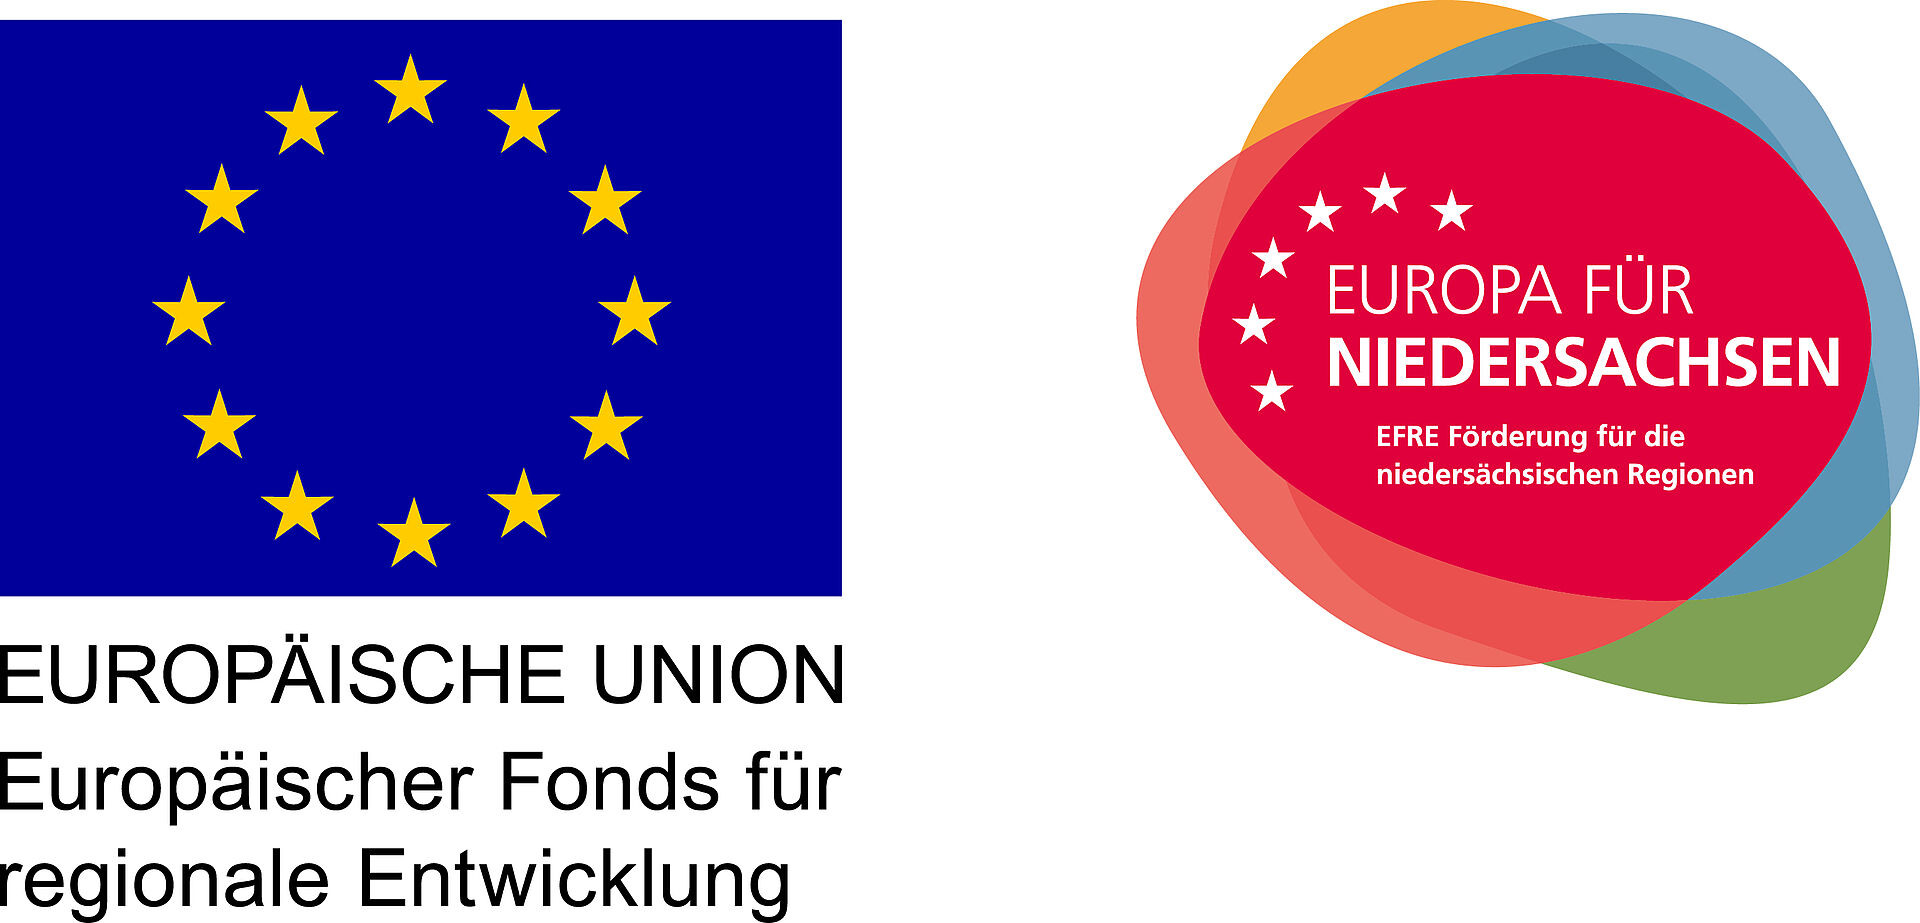 Logo EU und Europa für Niedersachsen